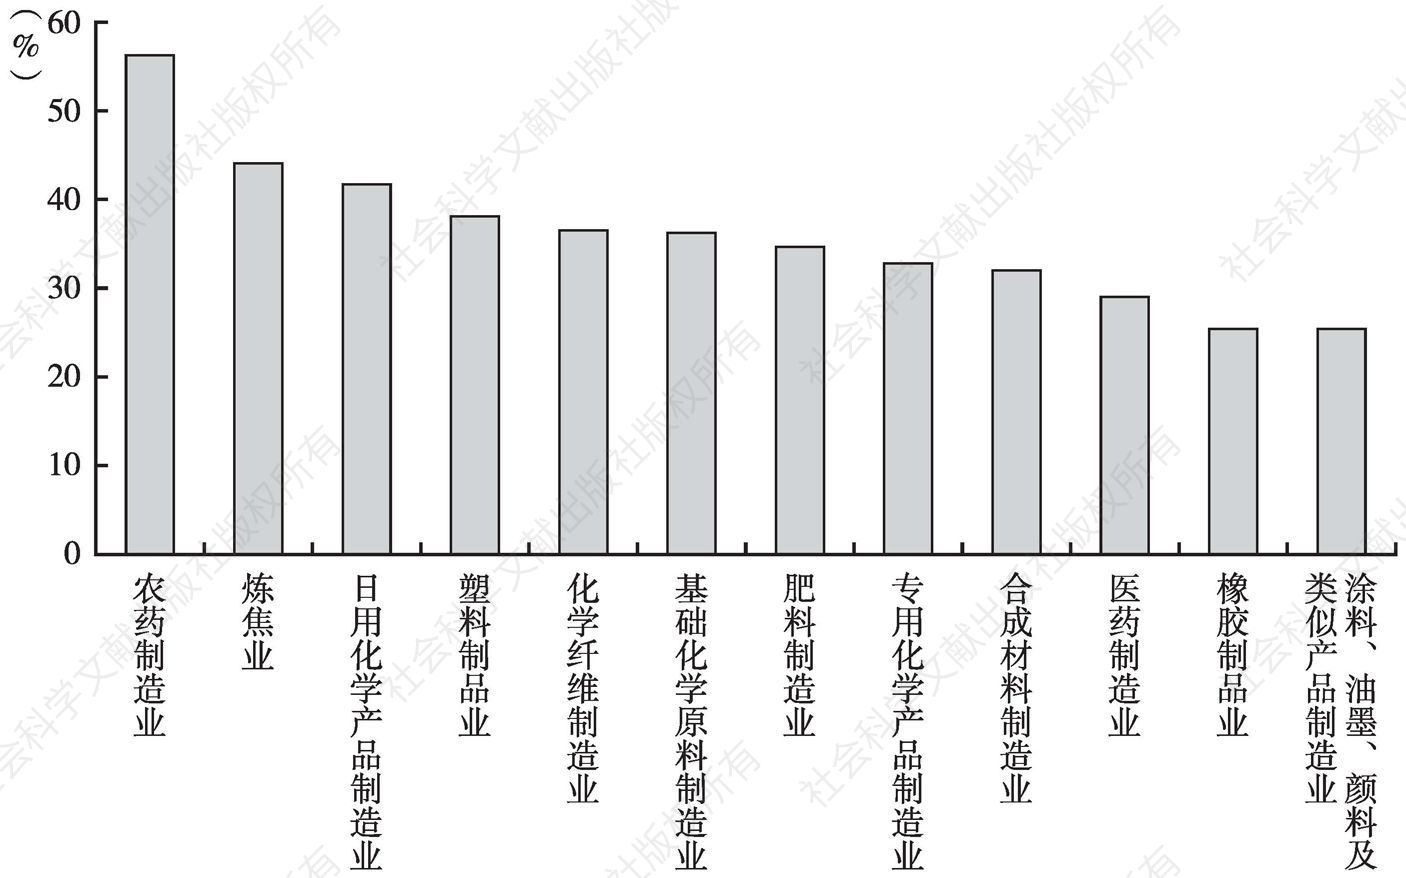 图3-10 云南省化学工业内部行业调入对产业增加值的贡献率